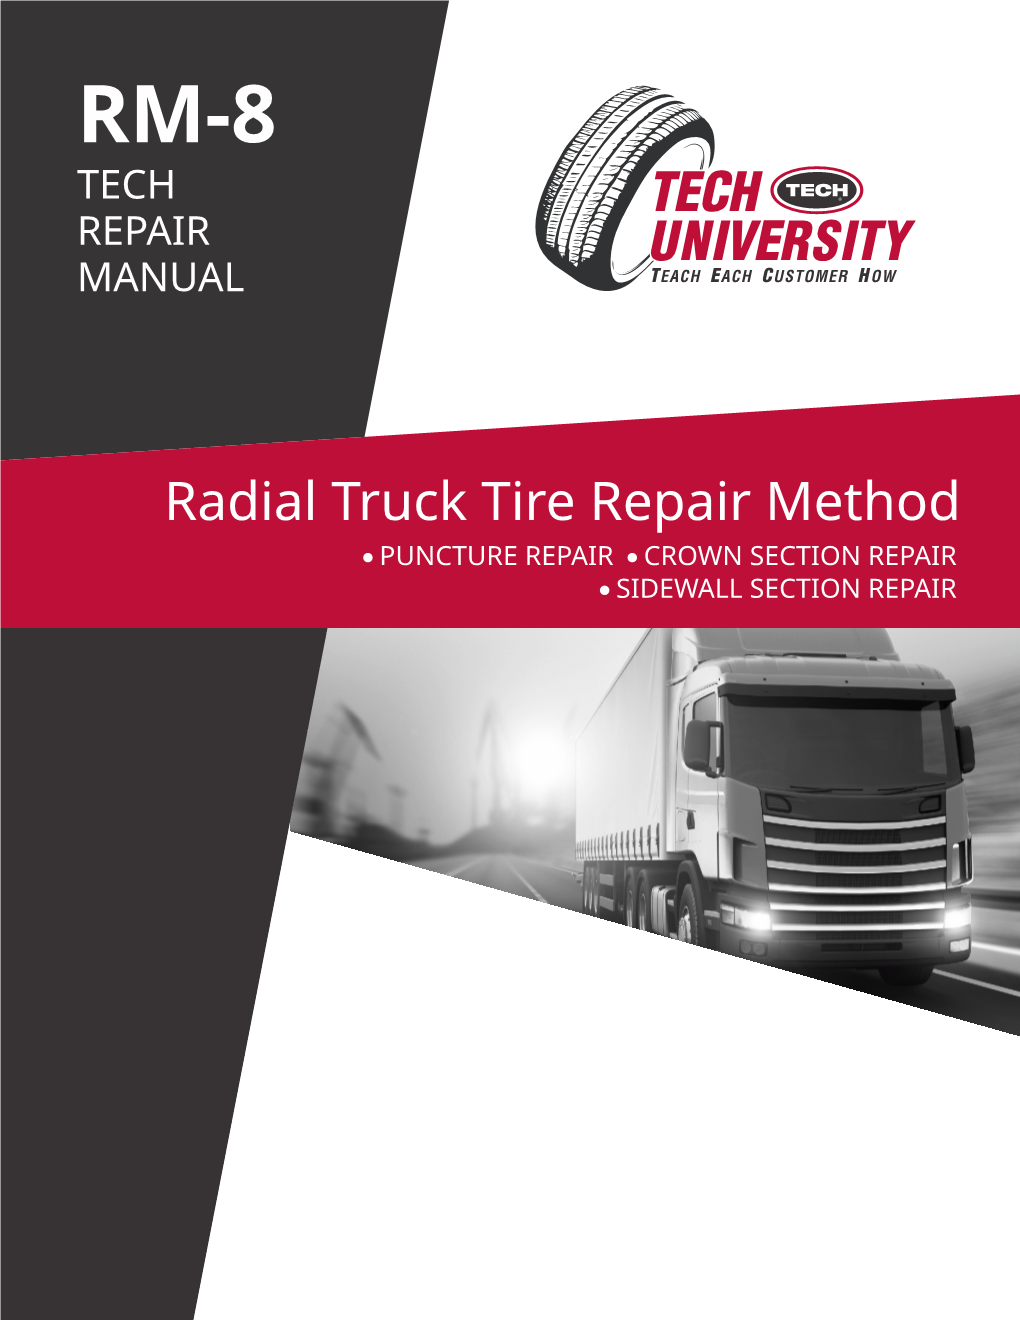 Radial Truck Tire Repair Method